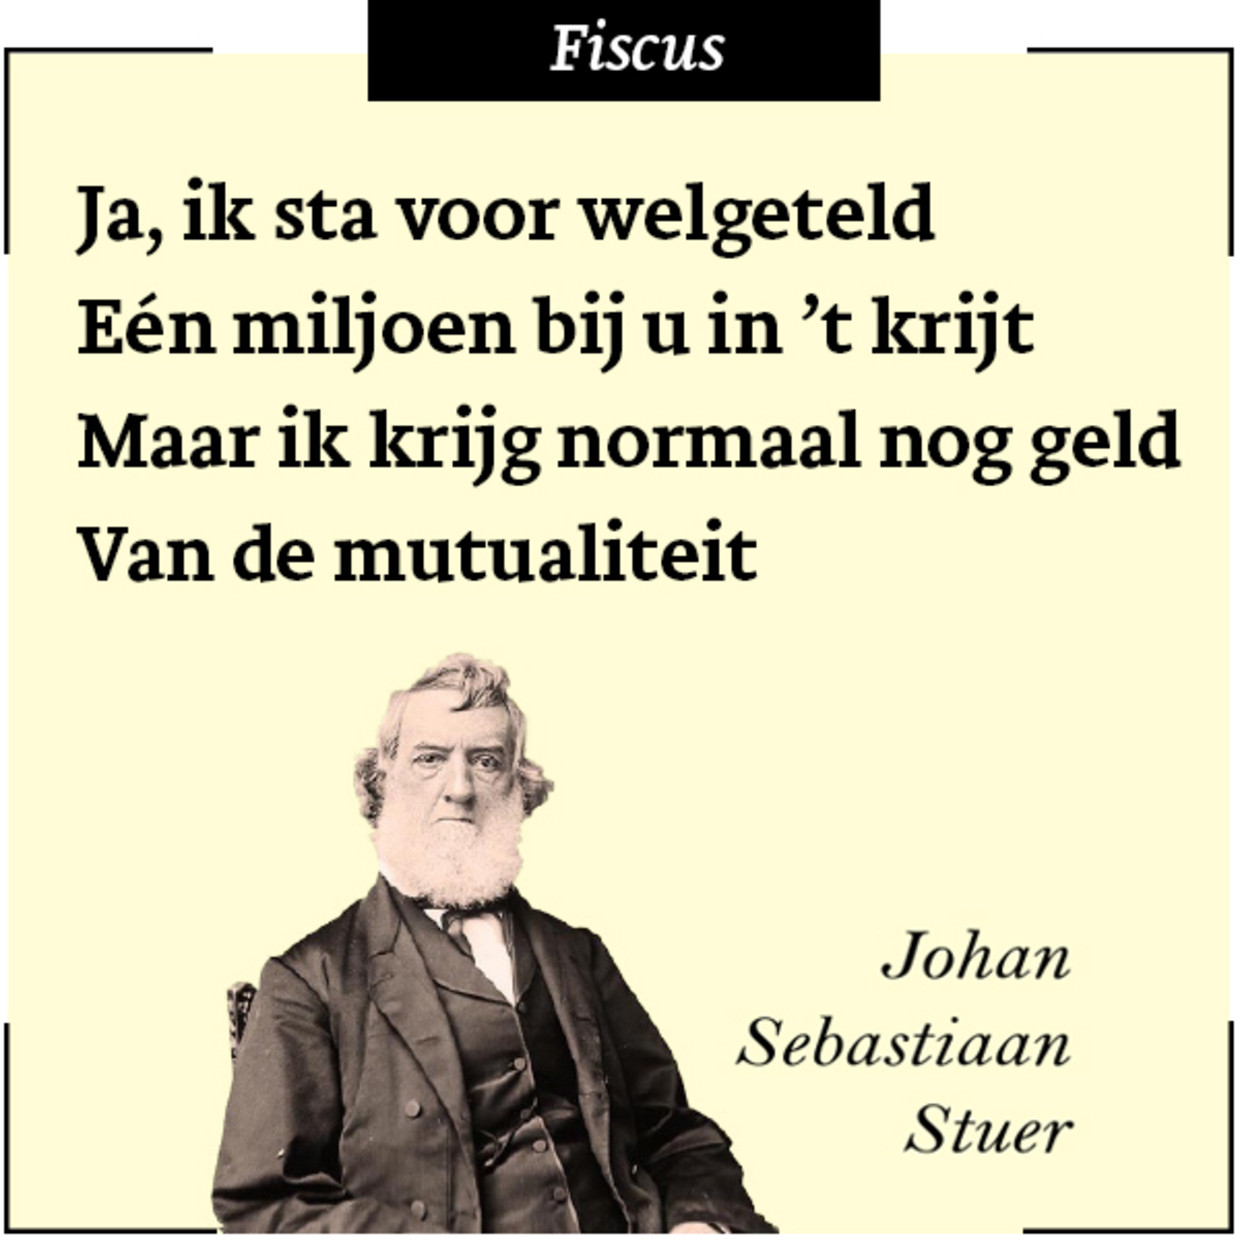 Johan Sebastiaan Stuer 33 - Fiscus Beeld Humo